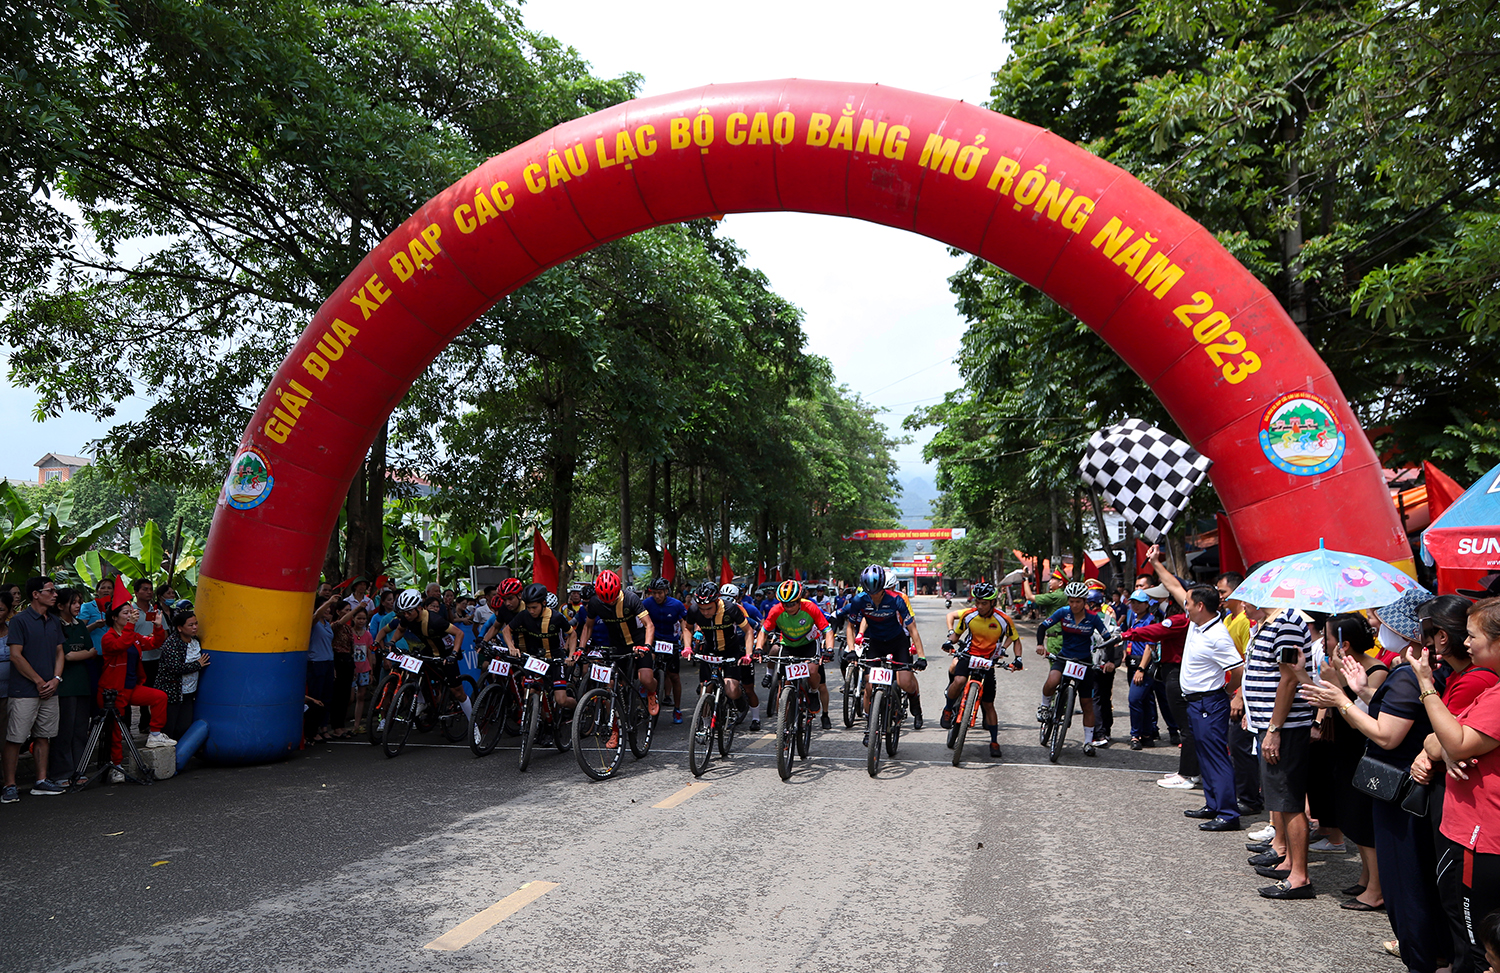 Giải đua xe đạp các câu lạc bộ Cao Bằng mở rộng năm 2023